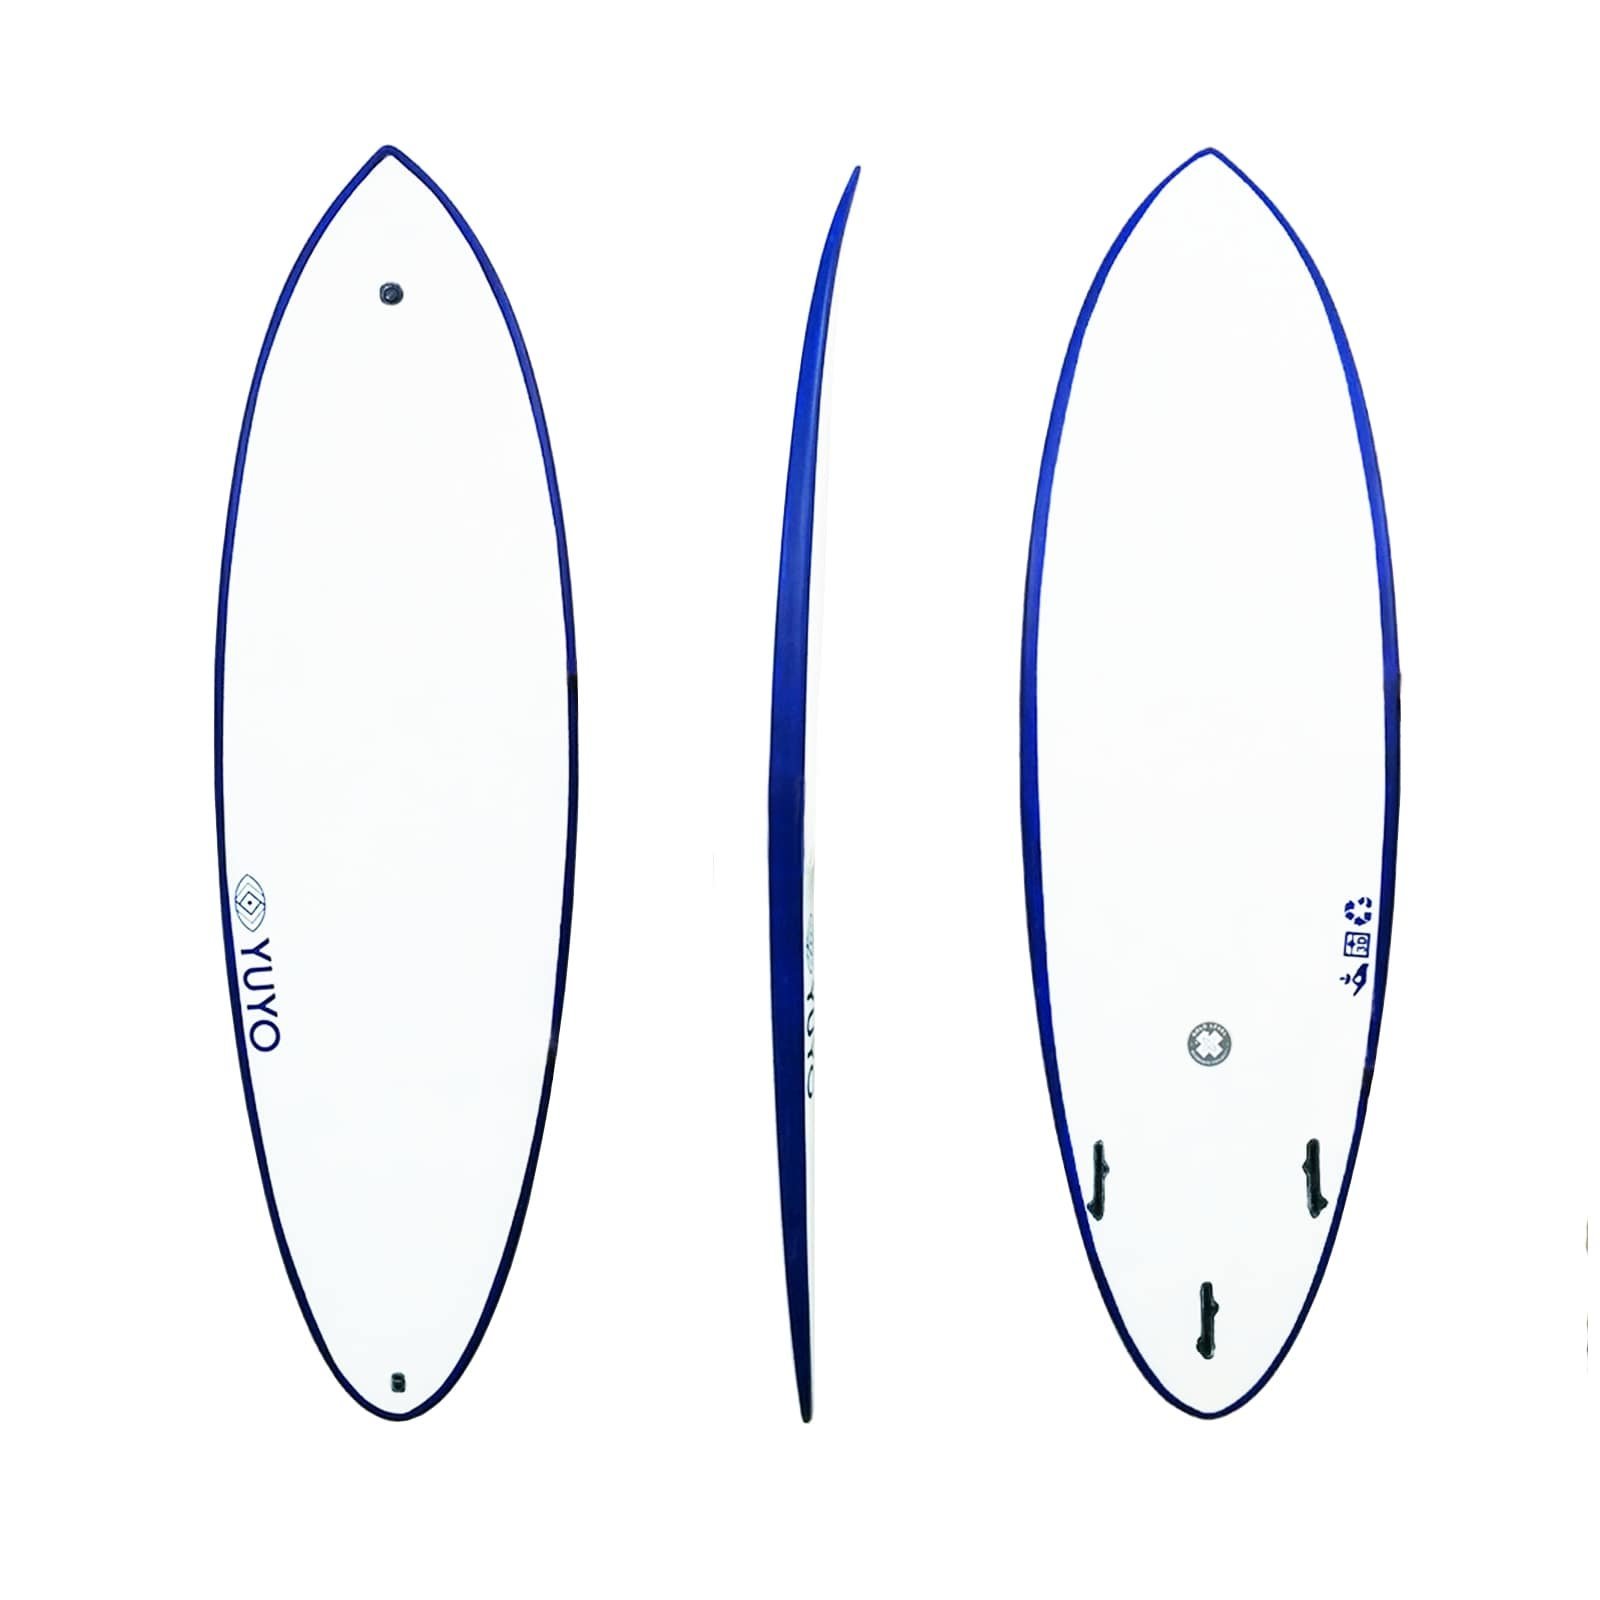 Surf ecoboard Saint pierre 5'10 hybride